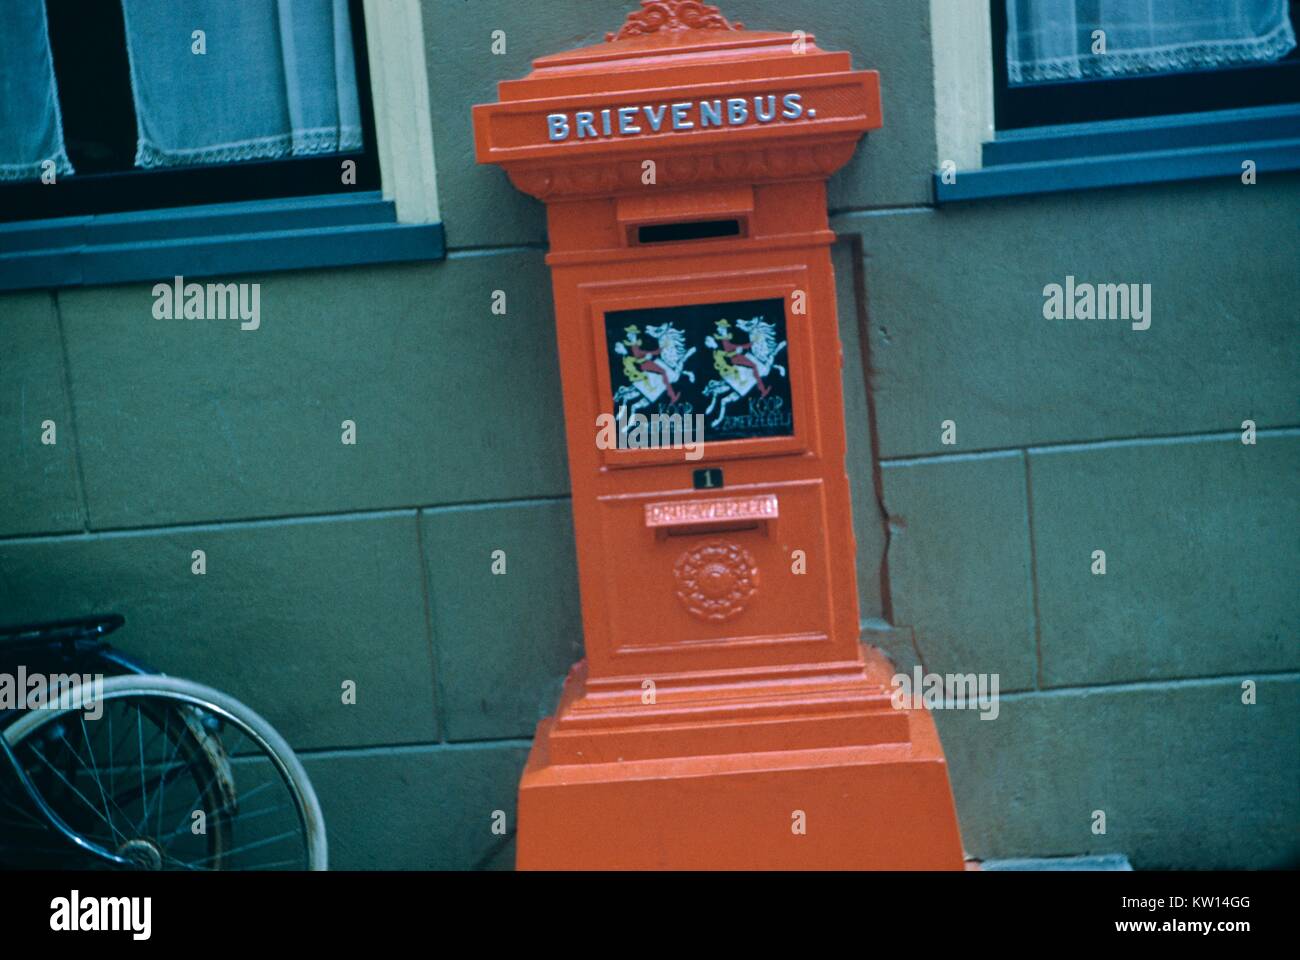 Cassetta postale in rosso con la dicitura 'brievenbus' o 'Mailbox', con una bicicletta appoggiata contro una parete, Olanda, 1952. Foto Stock